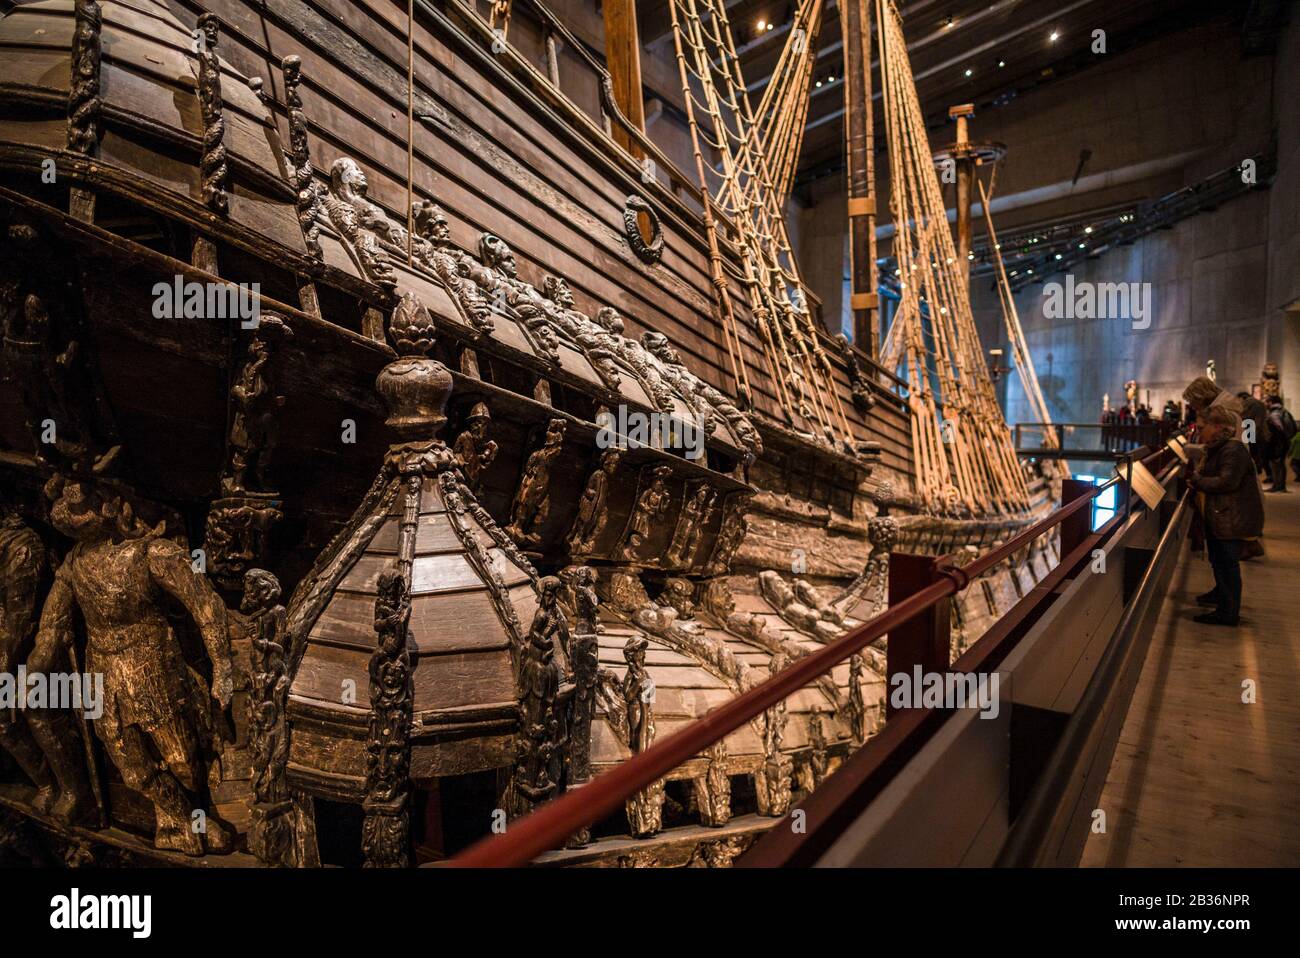 Suède, Stockholm, Djurgarden, Vasamuseet, musée contenant un navire du XVIIe siècle, Le Vasa, qui a coulé dans le port de Stockhom et qui a été élevé dans les années 1960 Banque D'Images